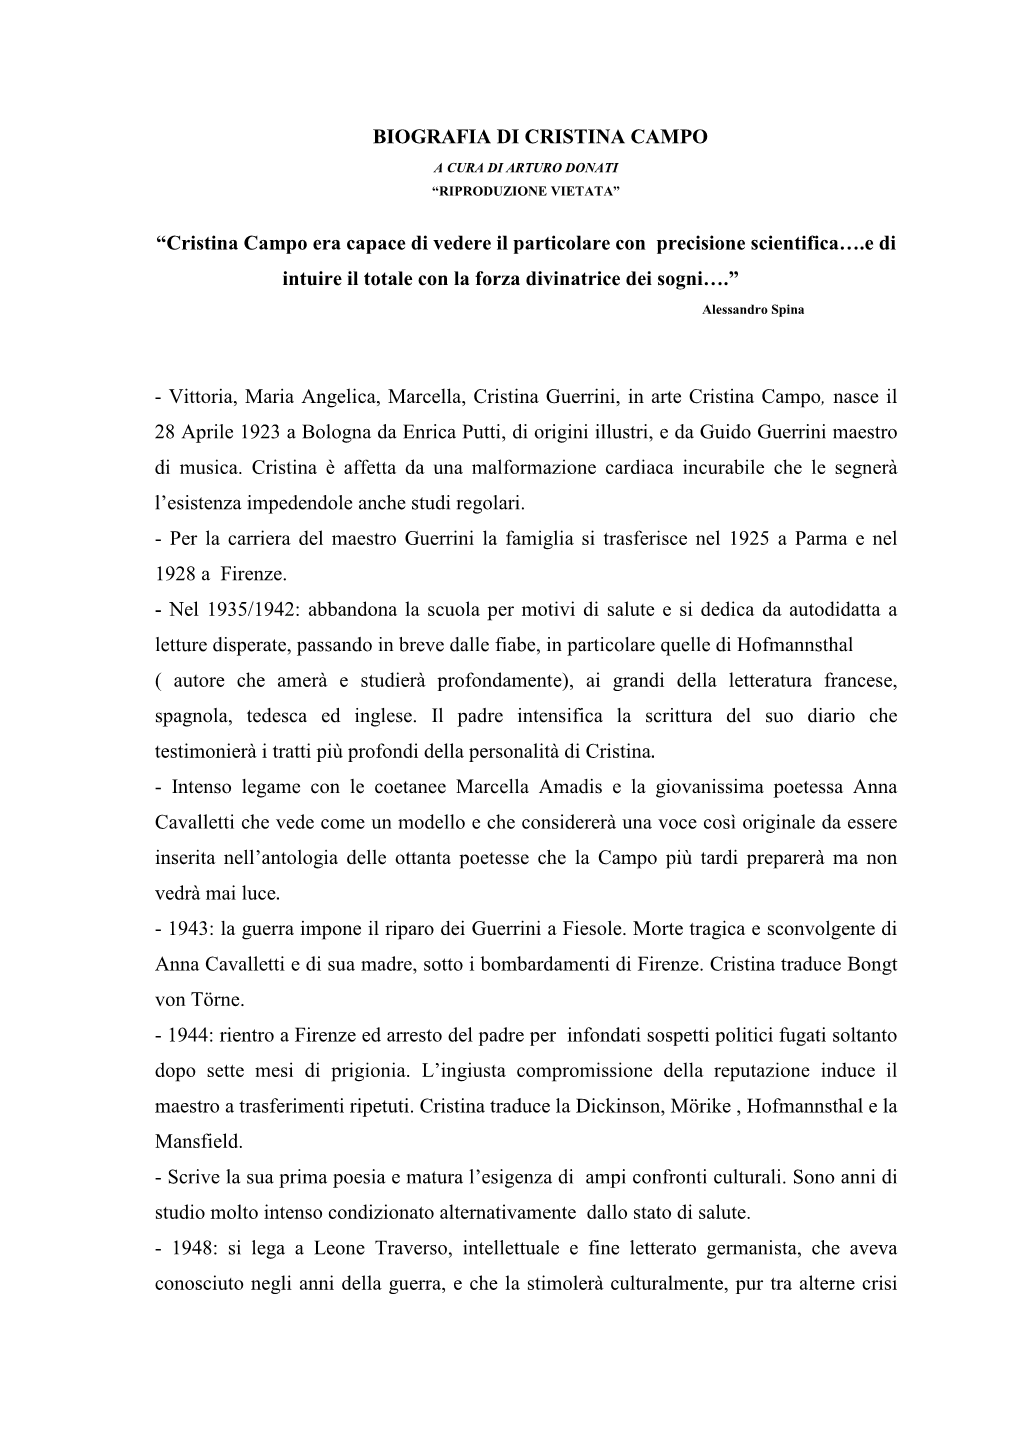 Biografia Di Cristina Campo a Cura Di Arturo Donati “Riproduzione Vietata”